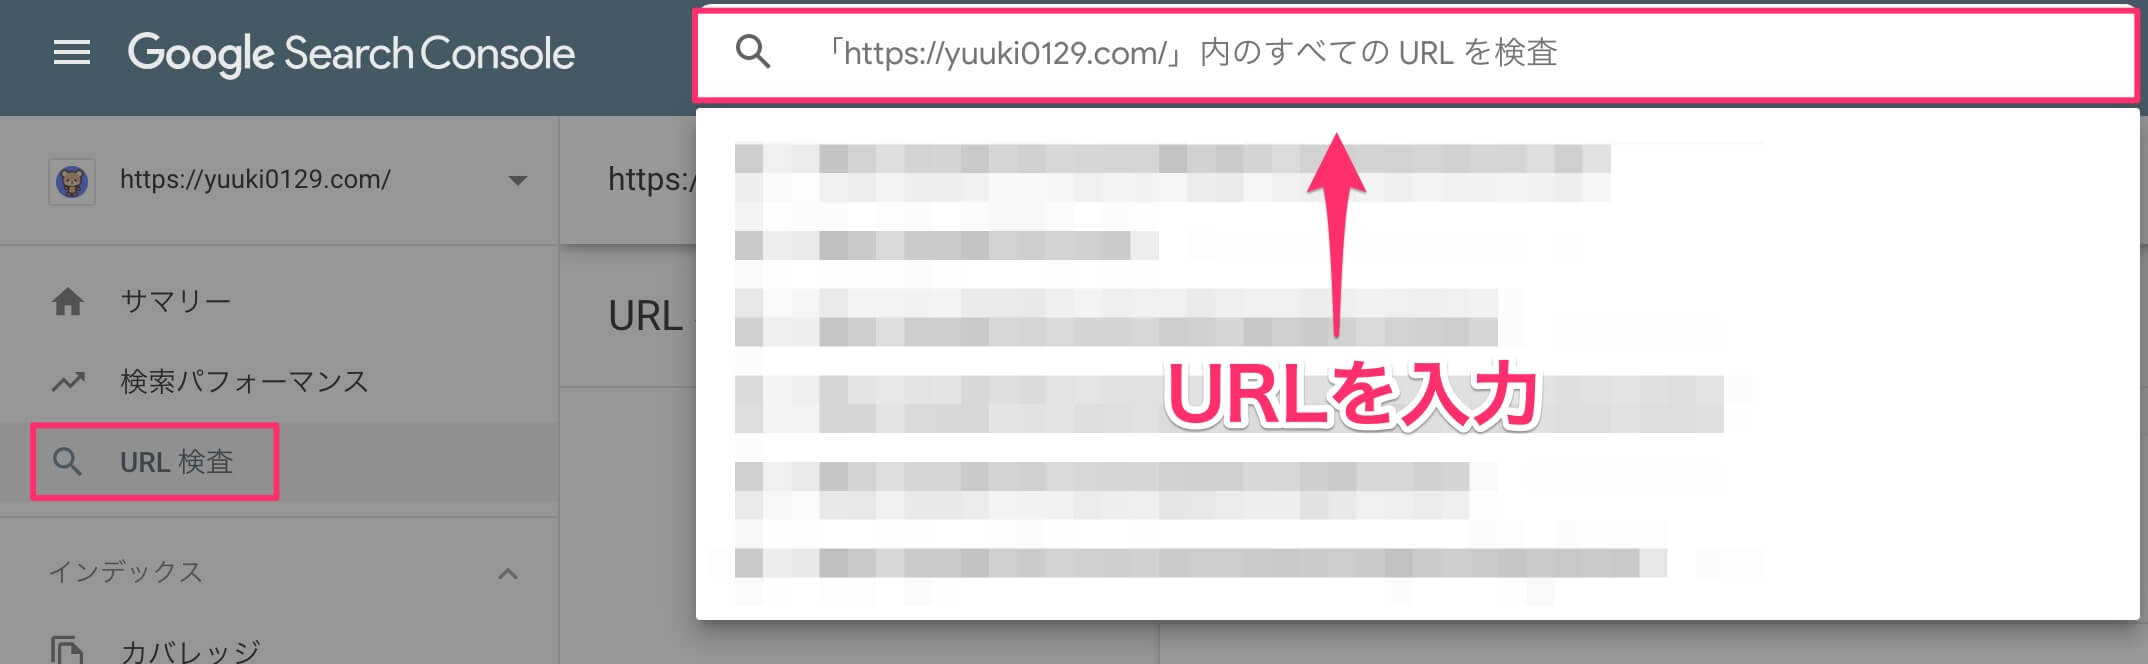 URLの検査